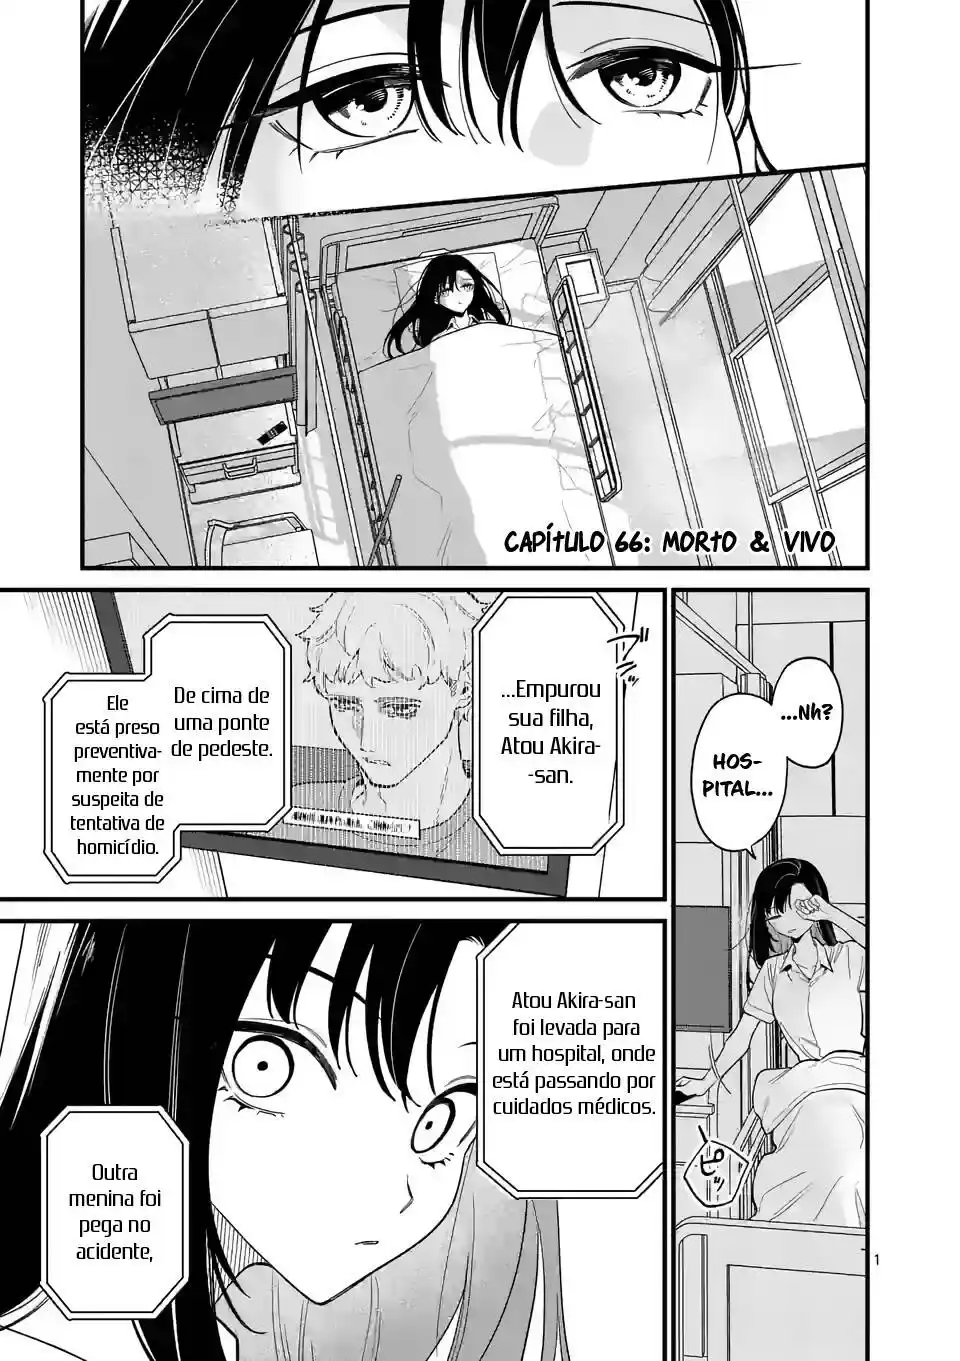 Liar Satsuki Can See Death (Usotsuki Satsuki wa Shi ga Mieru) 66 página 2